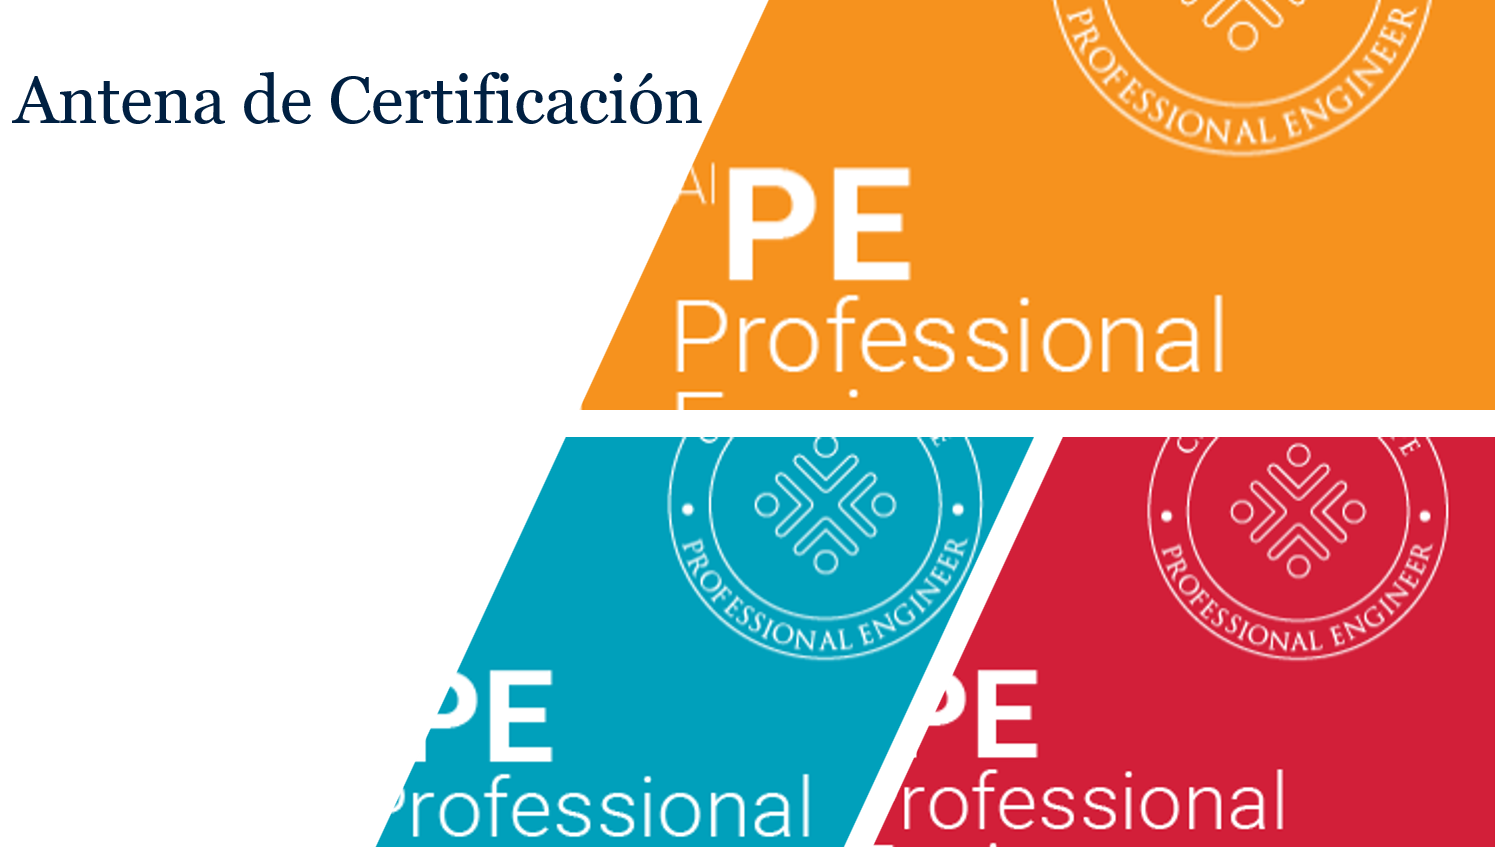 Obtención de la certificación profesional PE (Professional Engineer).